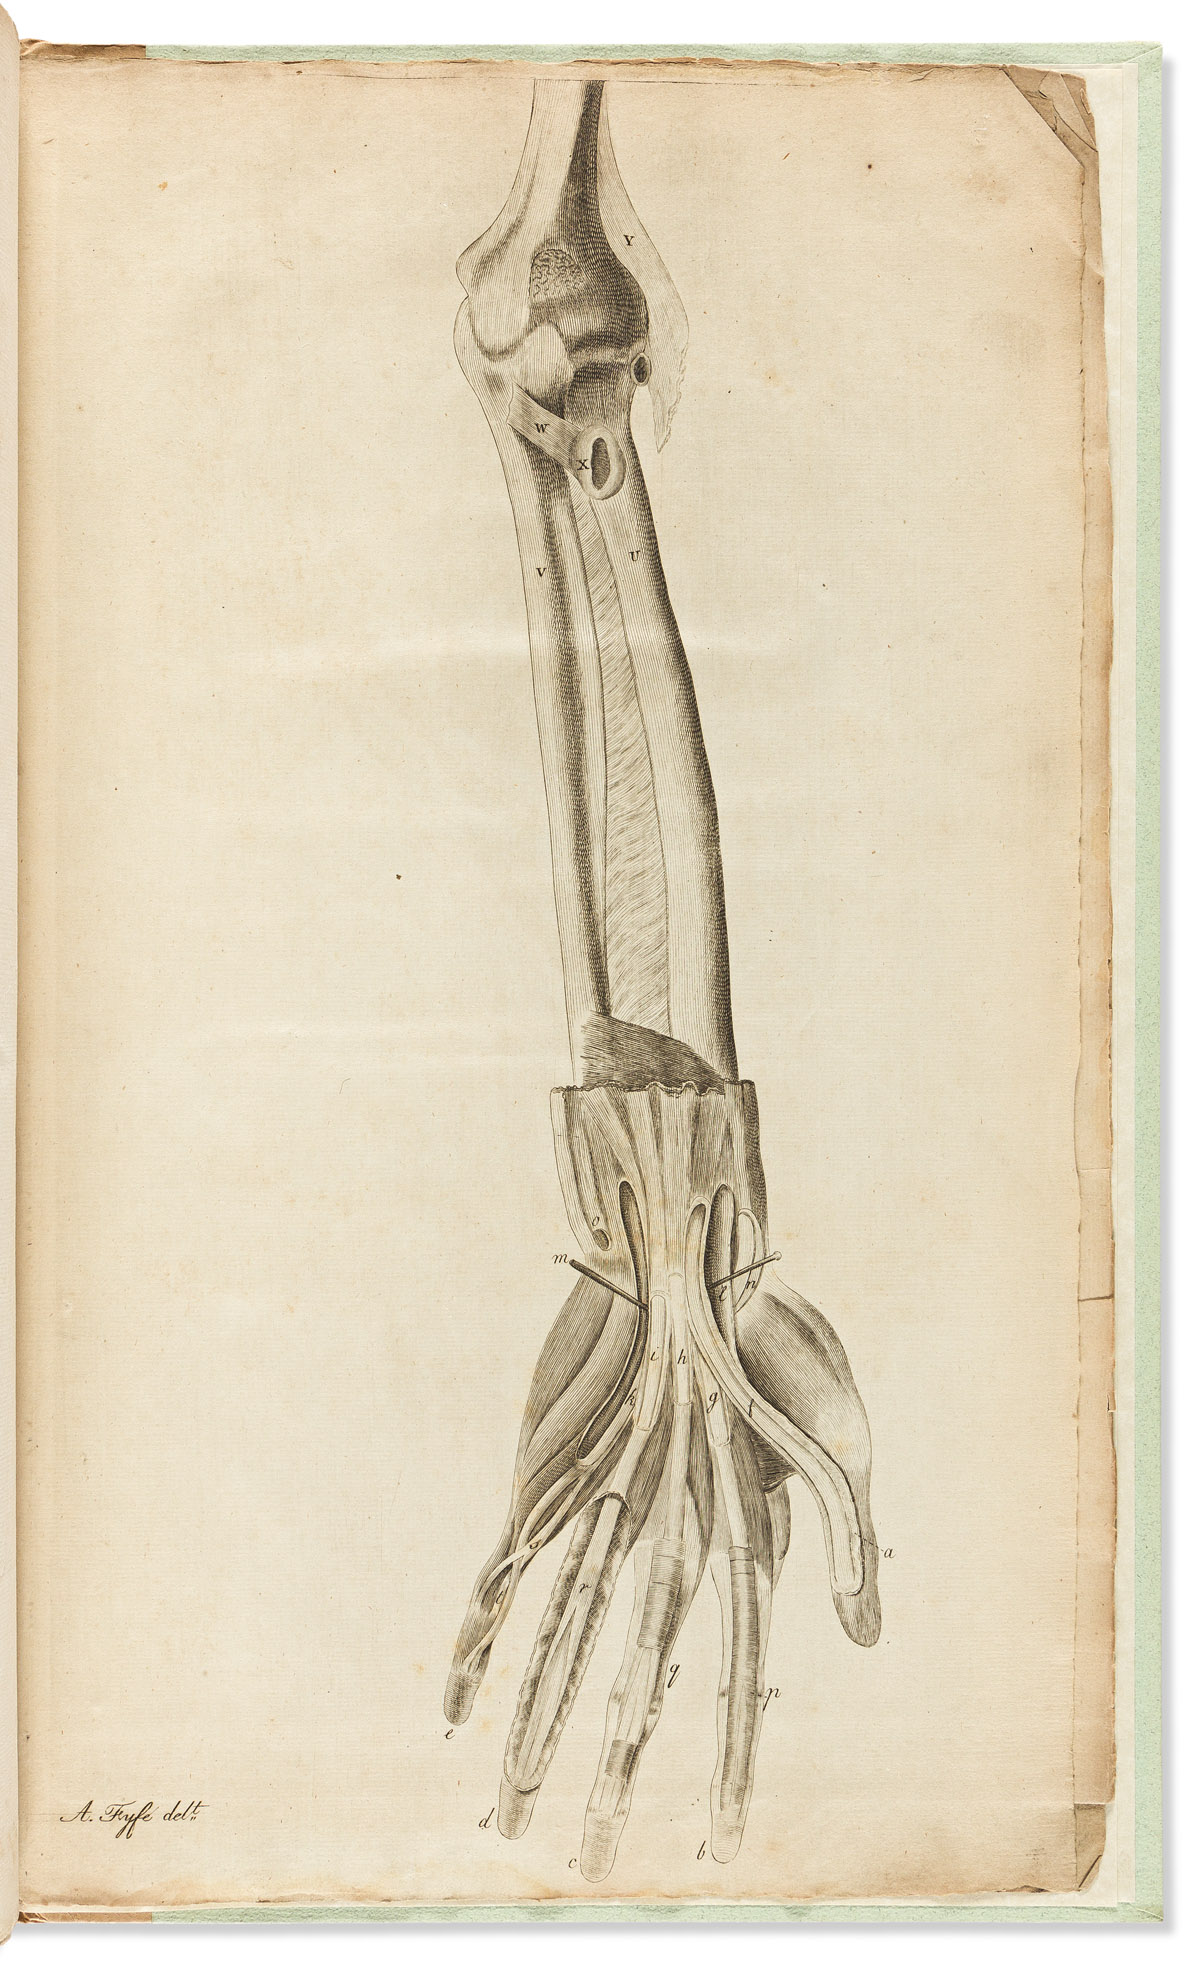 Monro, Alexander (1733-1817) A Description of all the Bursae Mucosae of the Human Body.